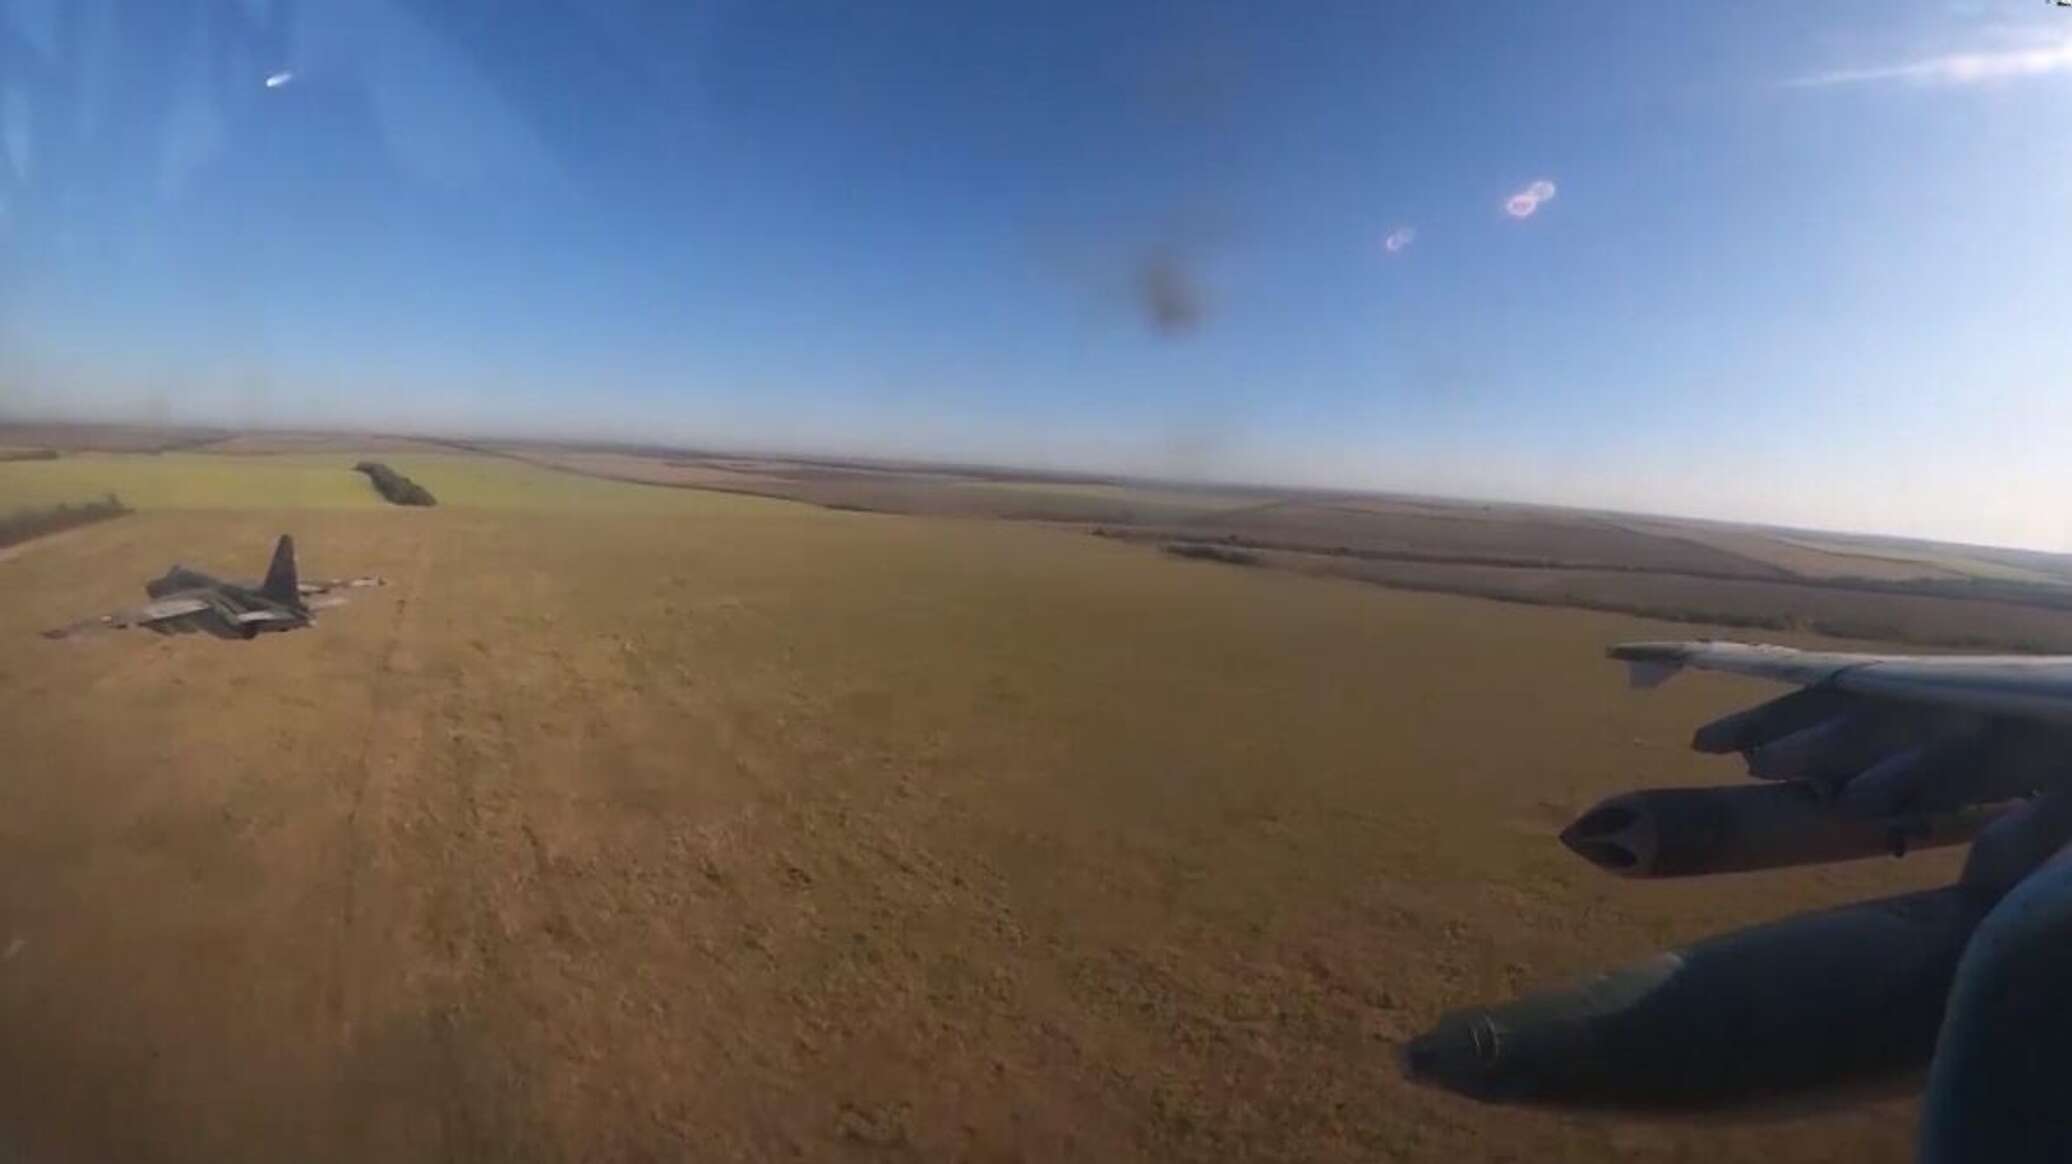 مقاتلتان روسيتان تتسللان على ارتفاع منخفض عبر الخطوط الأمامية وتدمران مقرات أوكرانية... فيديو